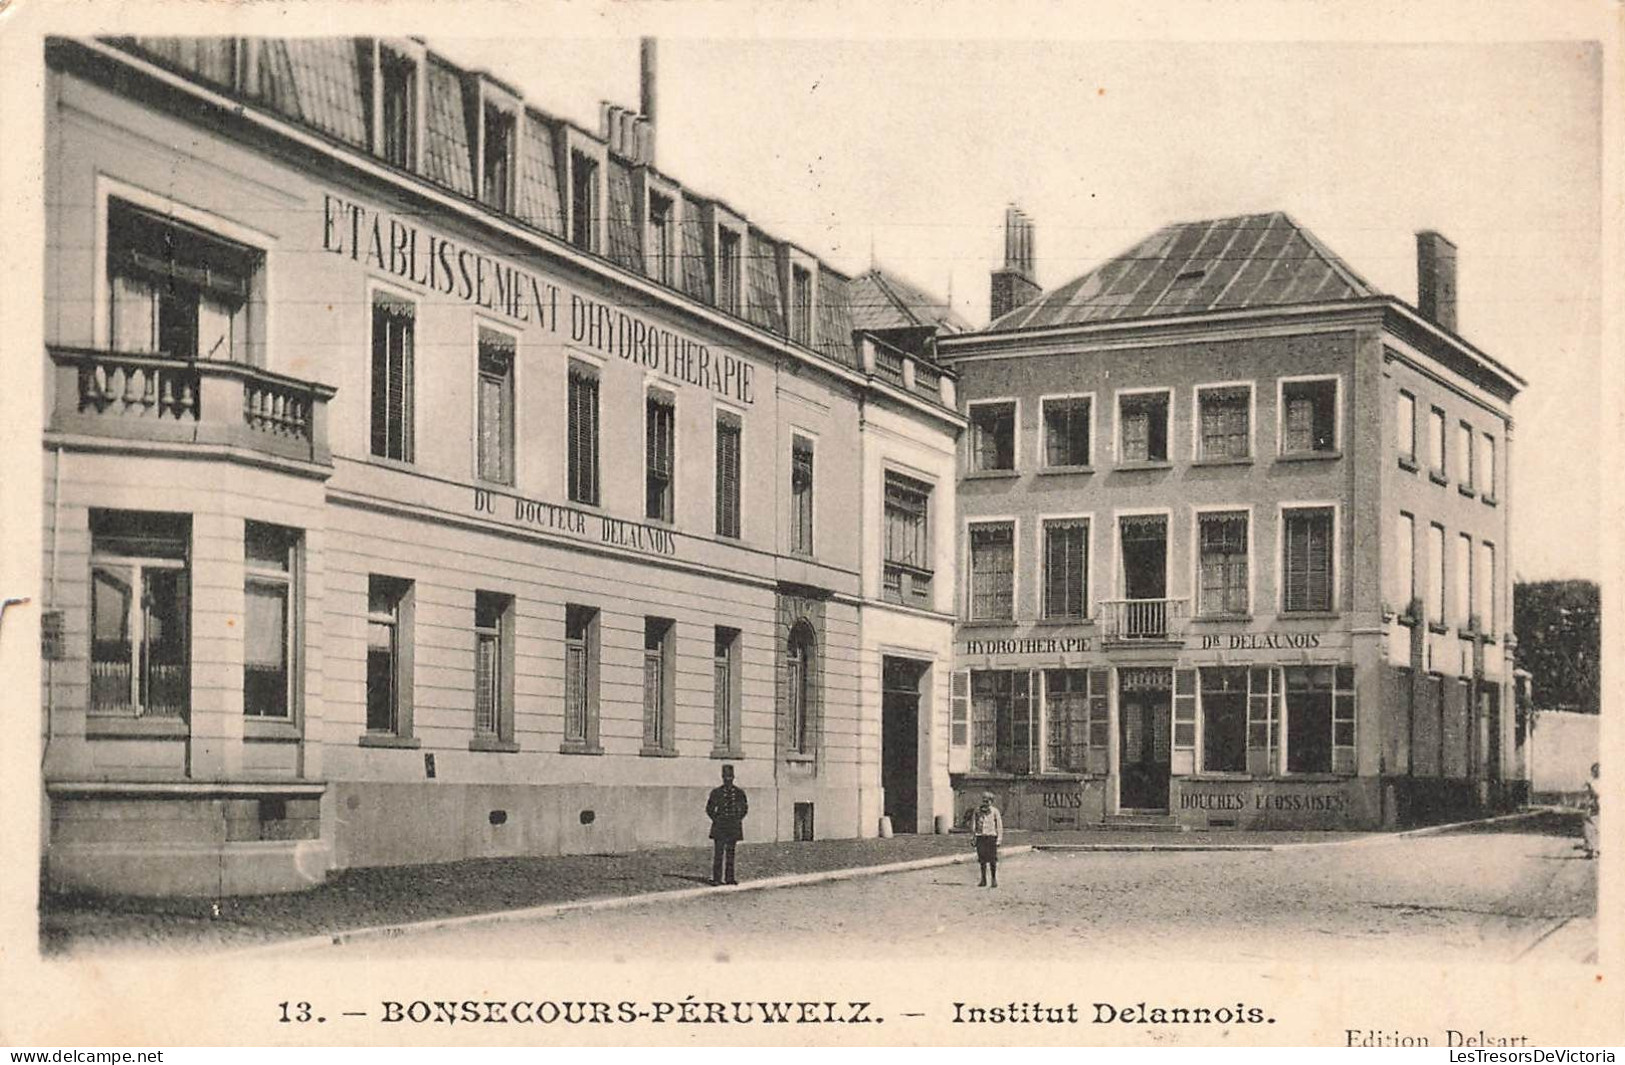 BELGIQUE - Bonsecours Péruwelz - Institut Delannois - Etablissement Dhydrotherapie - Carte Postale Ancienne - Péruwelz